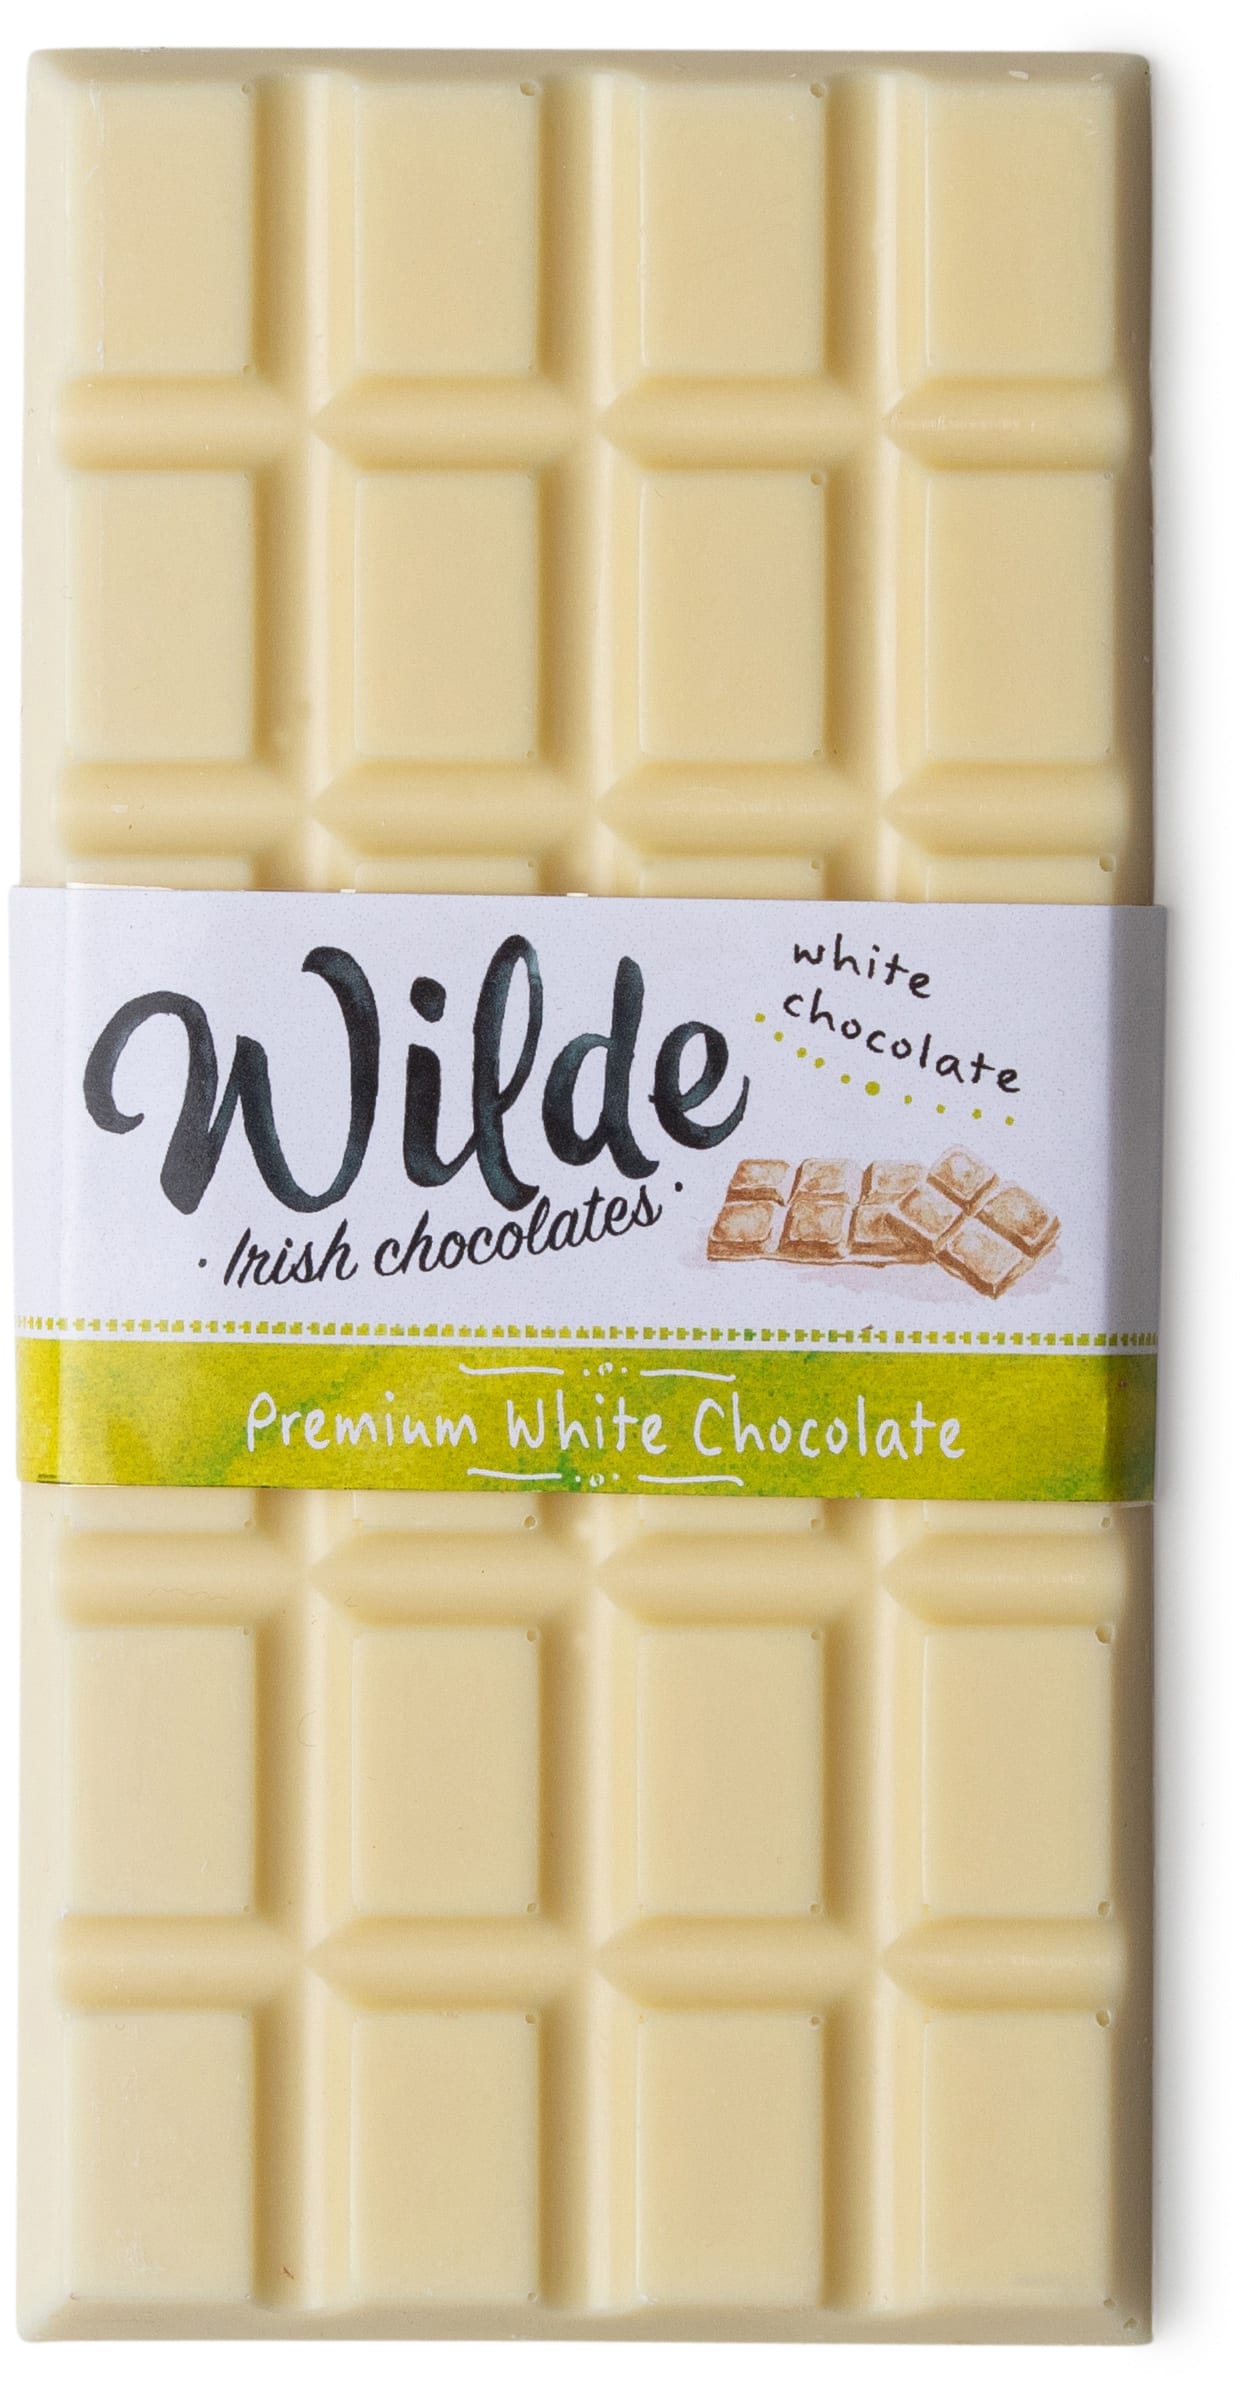 Premium white cholocate bar - Wilde Irish Chocolates